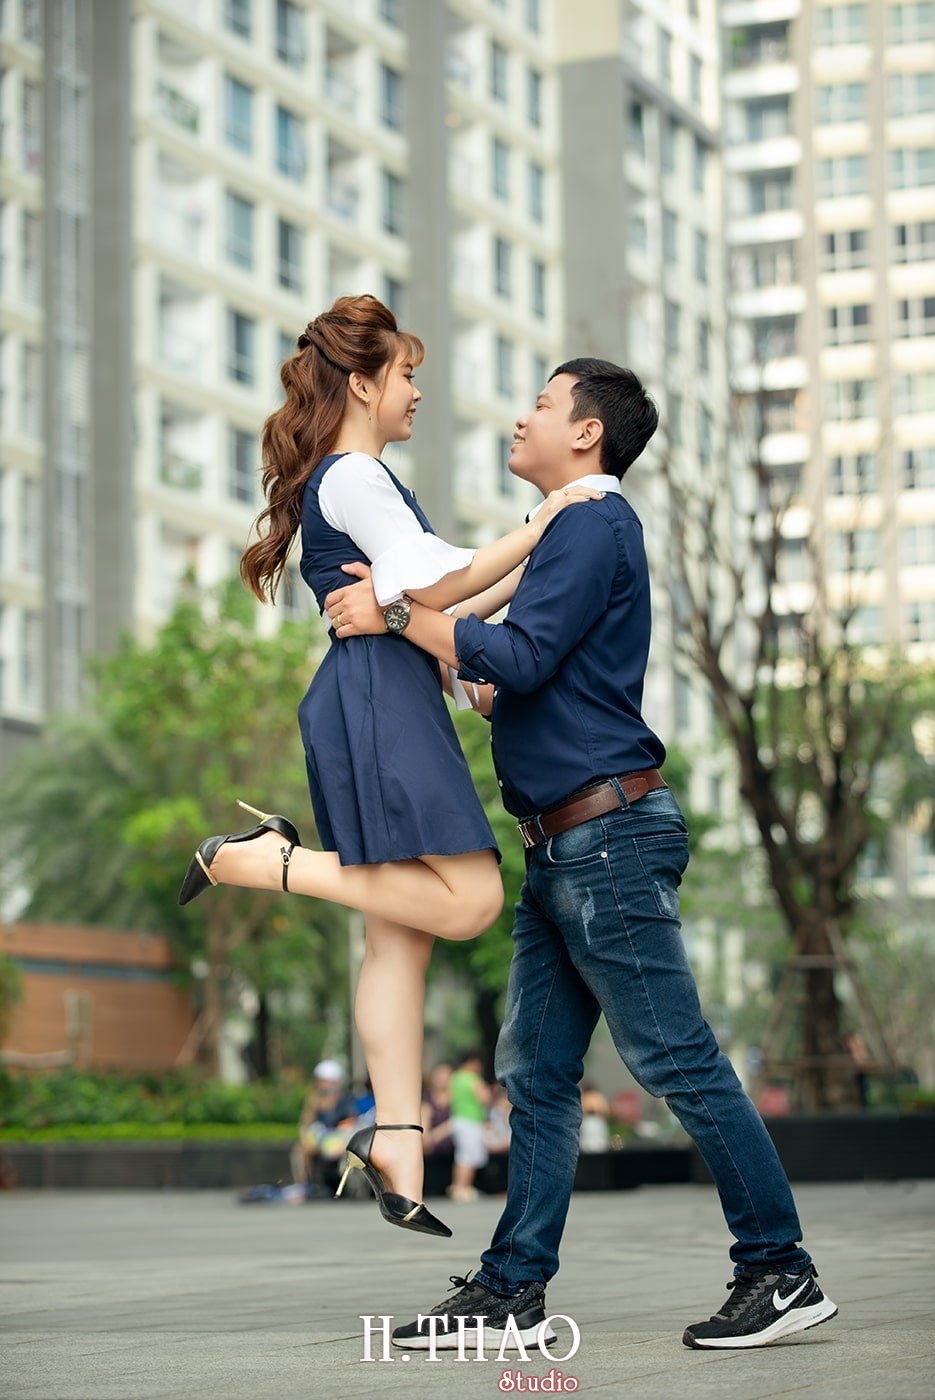 Couple 15 - 3 concept chụp ảnh với người yêu đẹp mà chất - HThao Studio